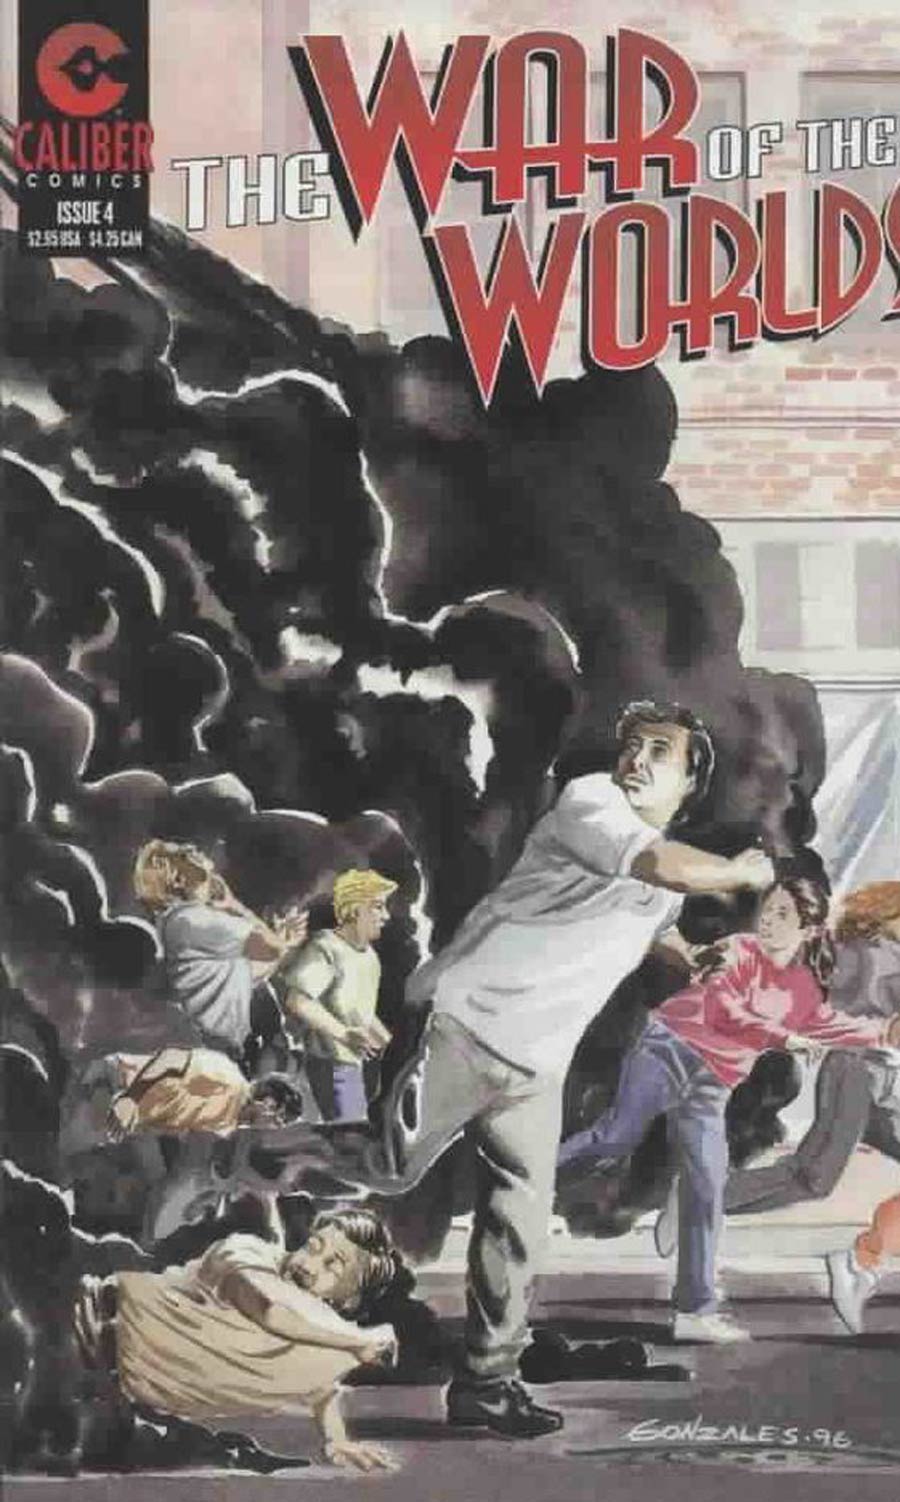 War Of The Worlds (Caliber) #4